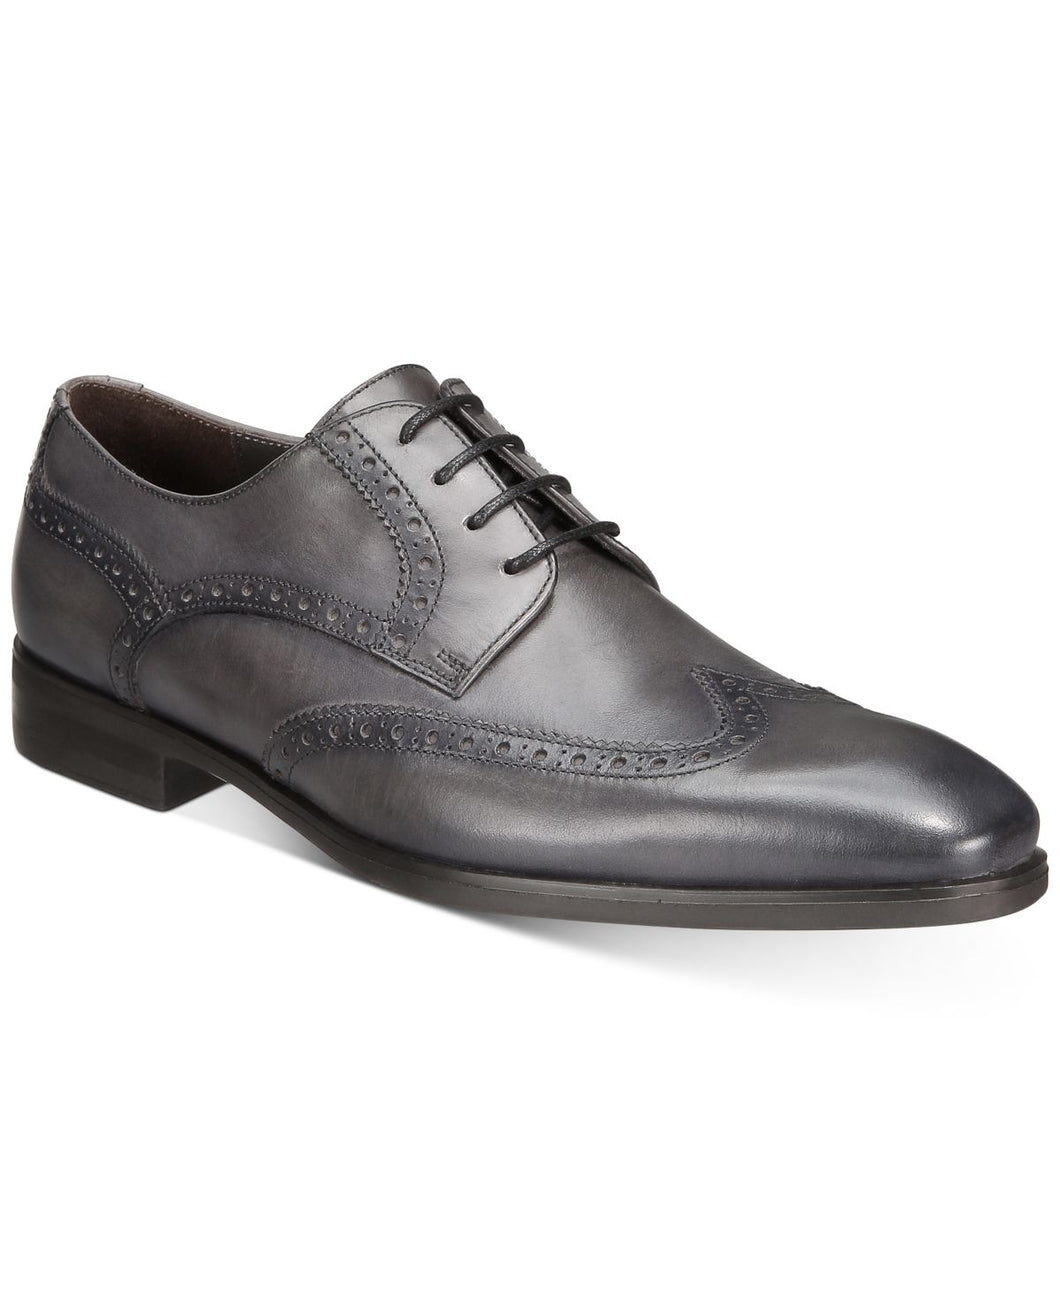 Bruno Magli Men's Bowman Wingtip Oxfords Men's Shoes Size 9.5